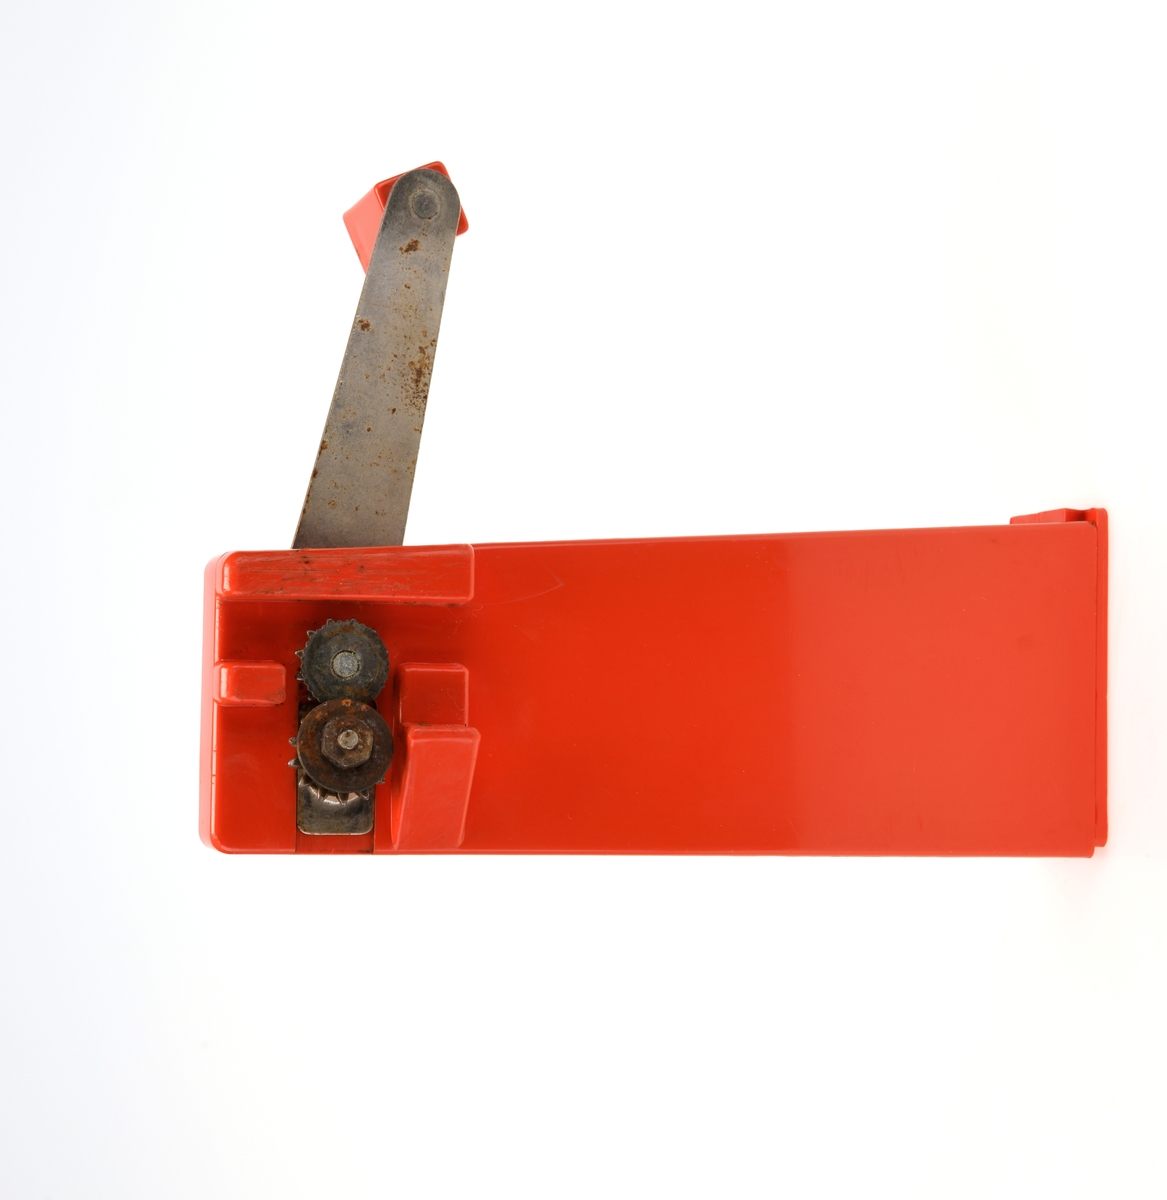 Rød hermetikkboksåpner fra 1970-tallet produsert i Sverige.